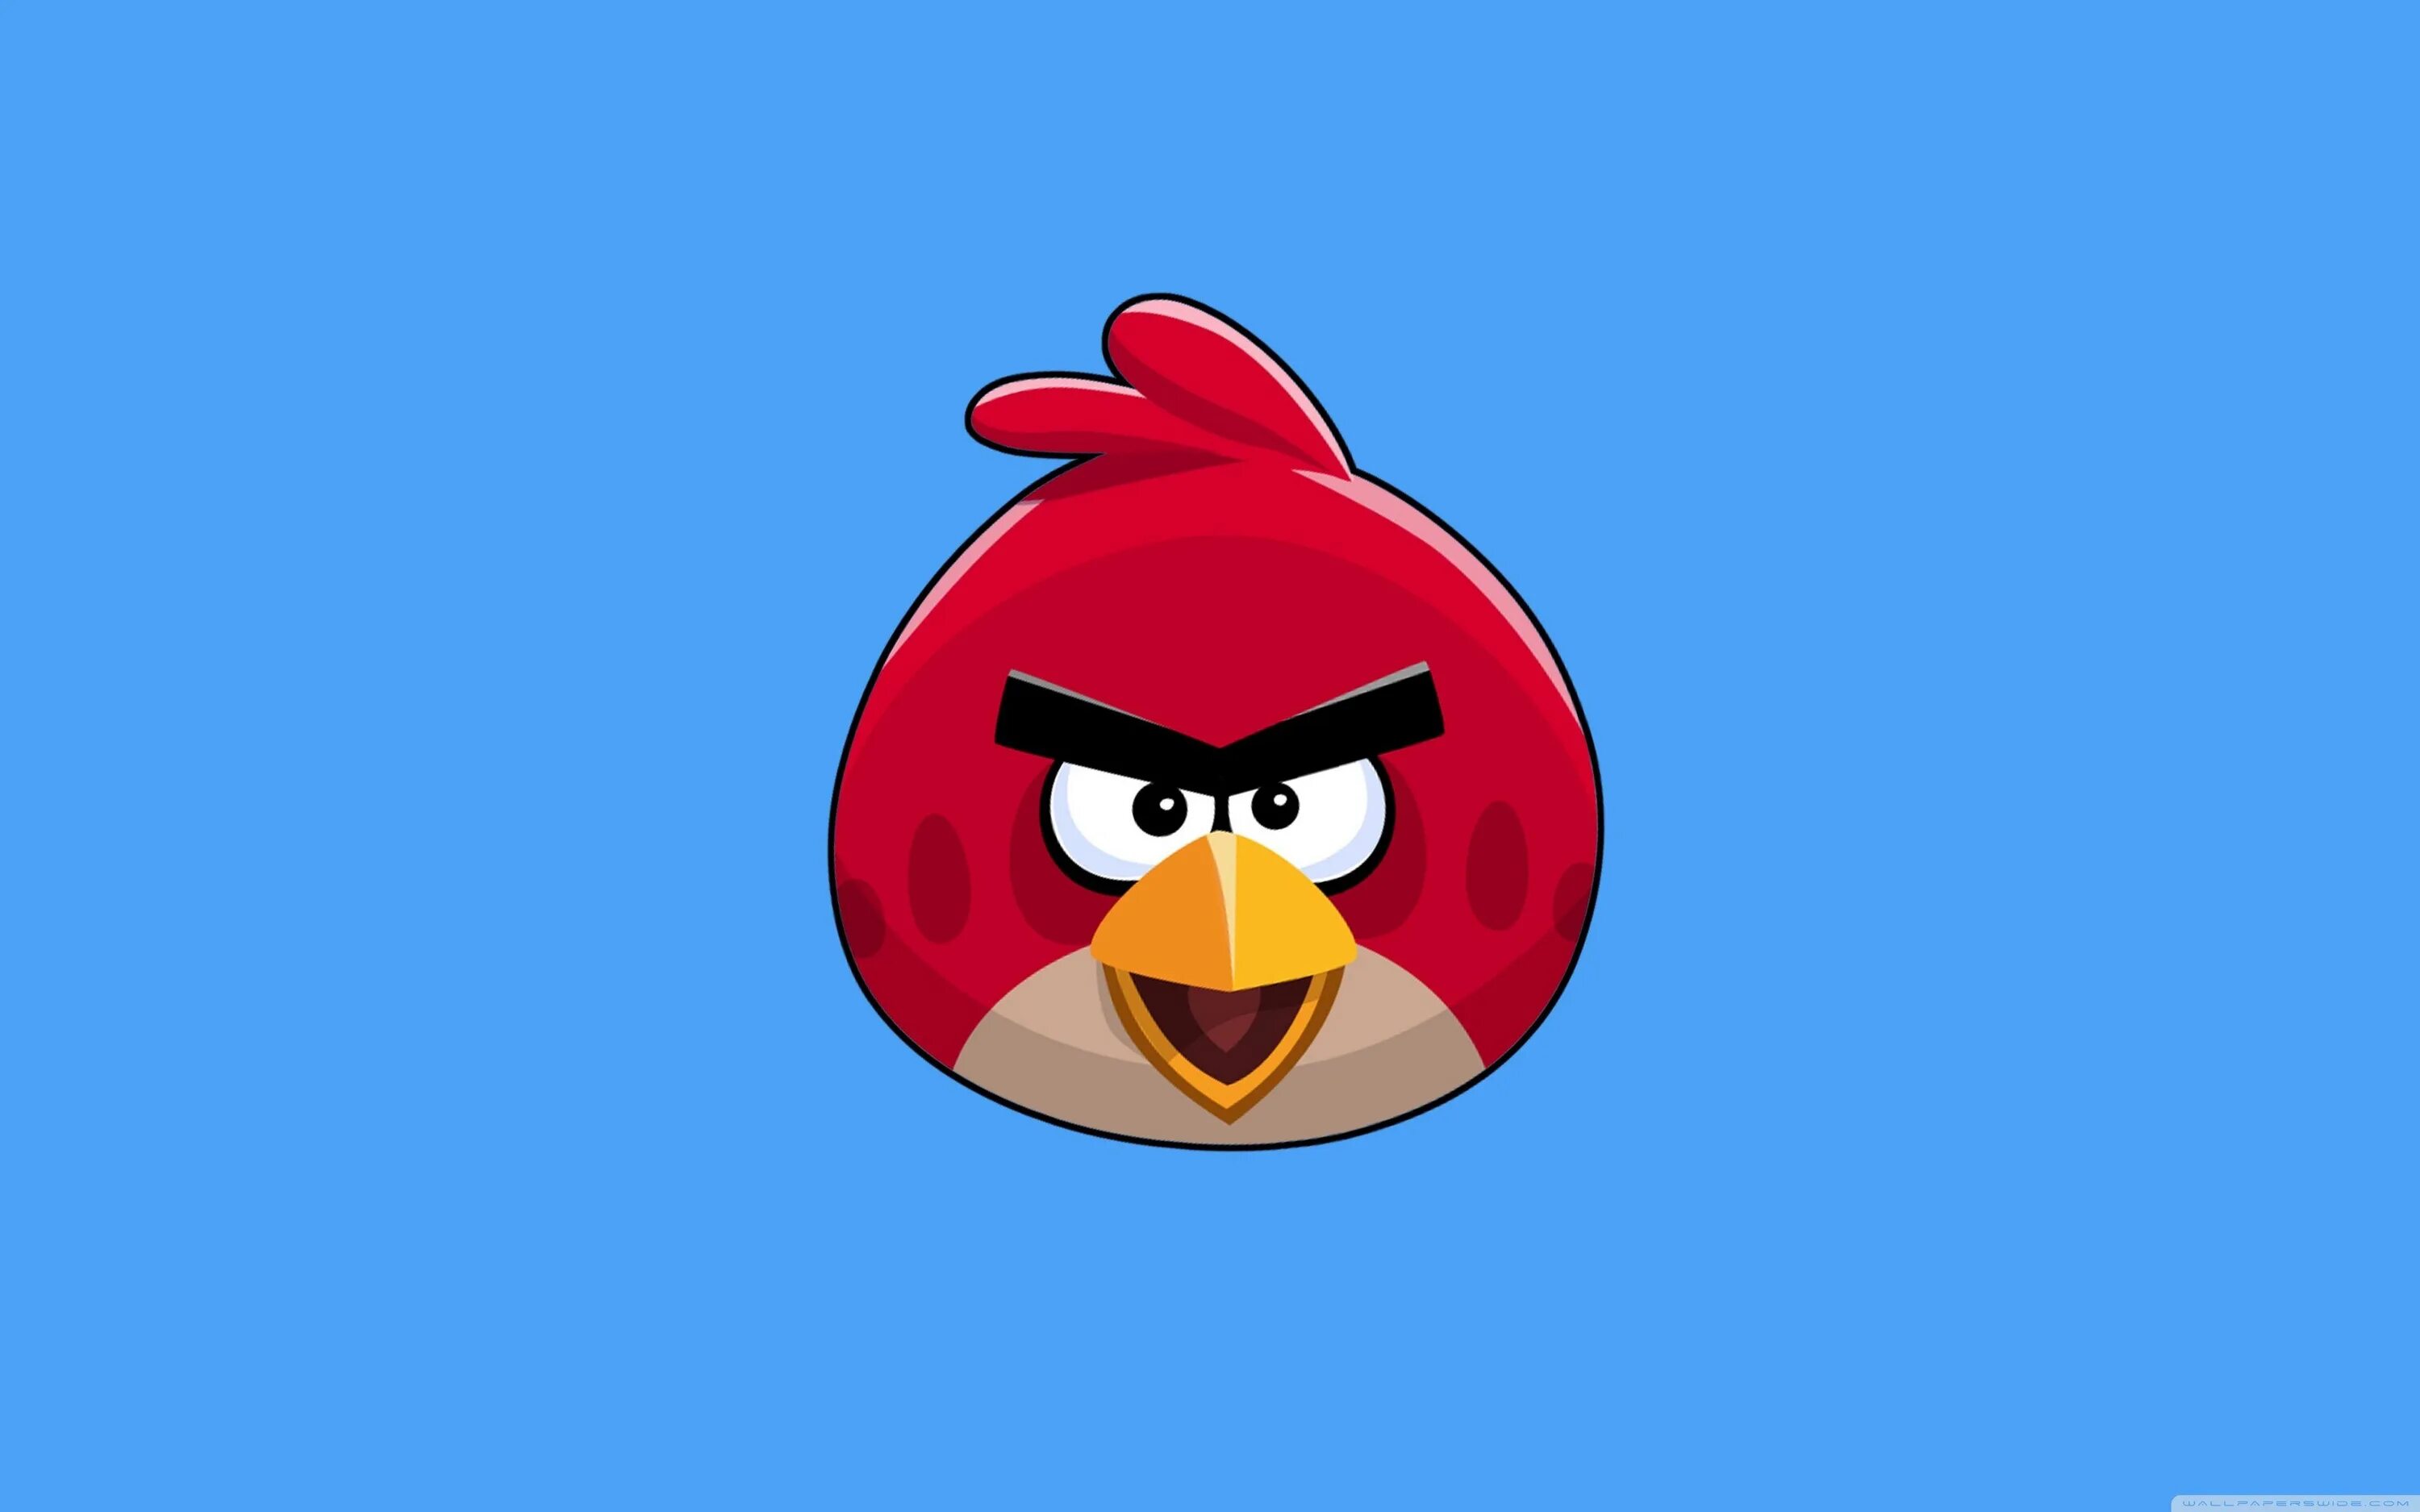 Энгри бёрдз злые птички. Игра Angry Birds Red. Ред птичка Энгри бердз. Злая птичка из Энгри бердз.